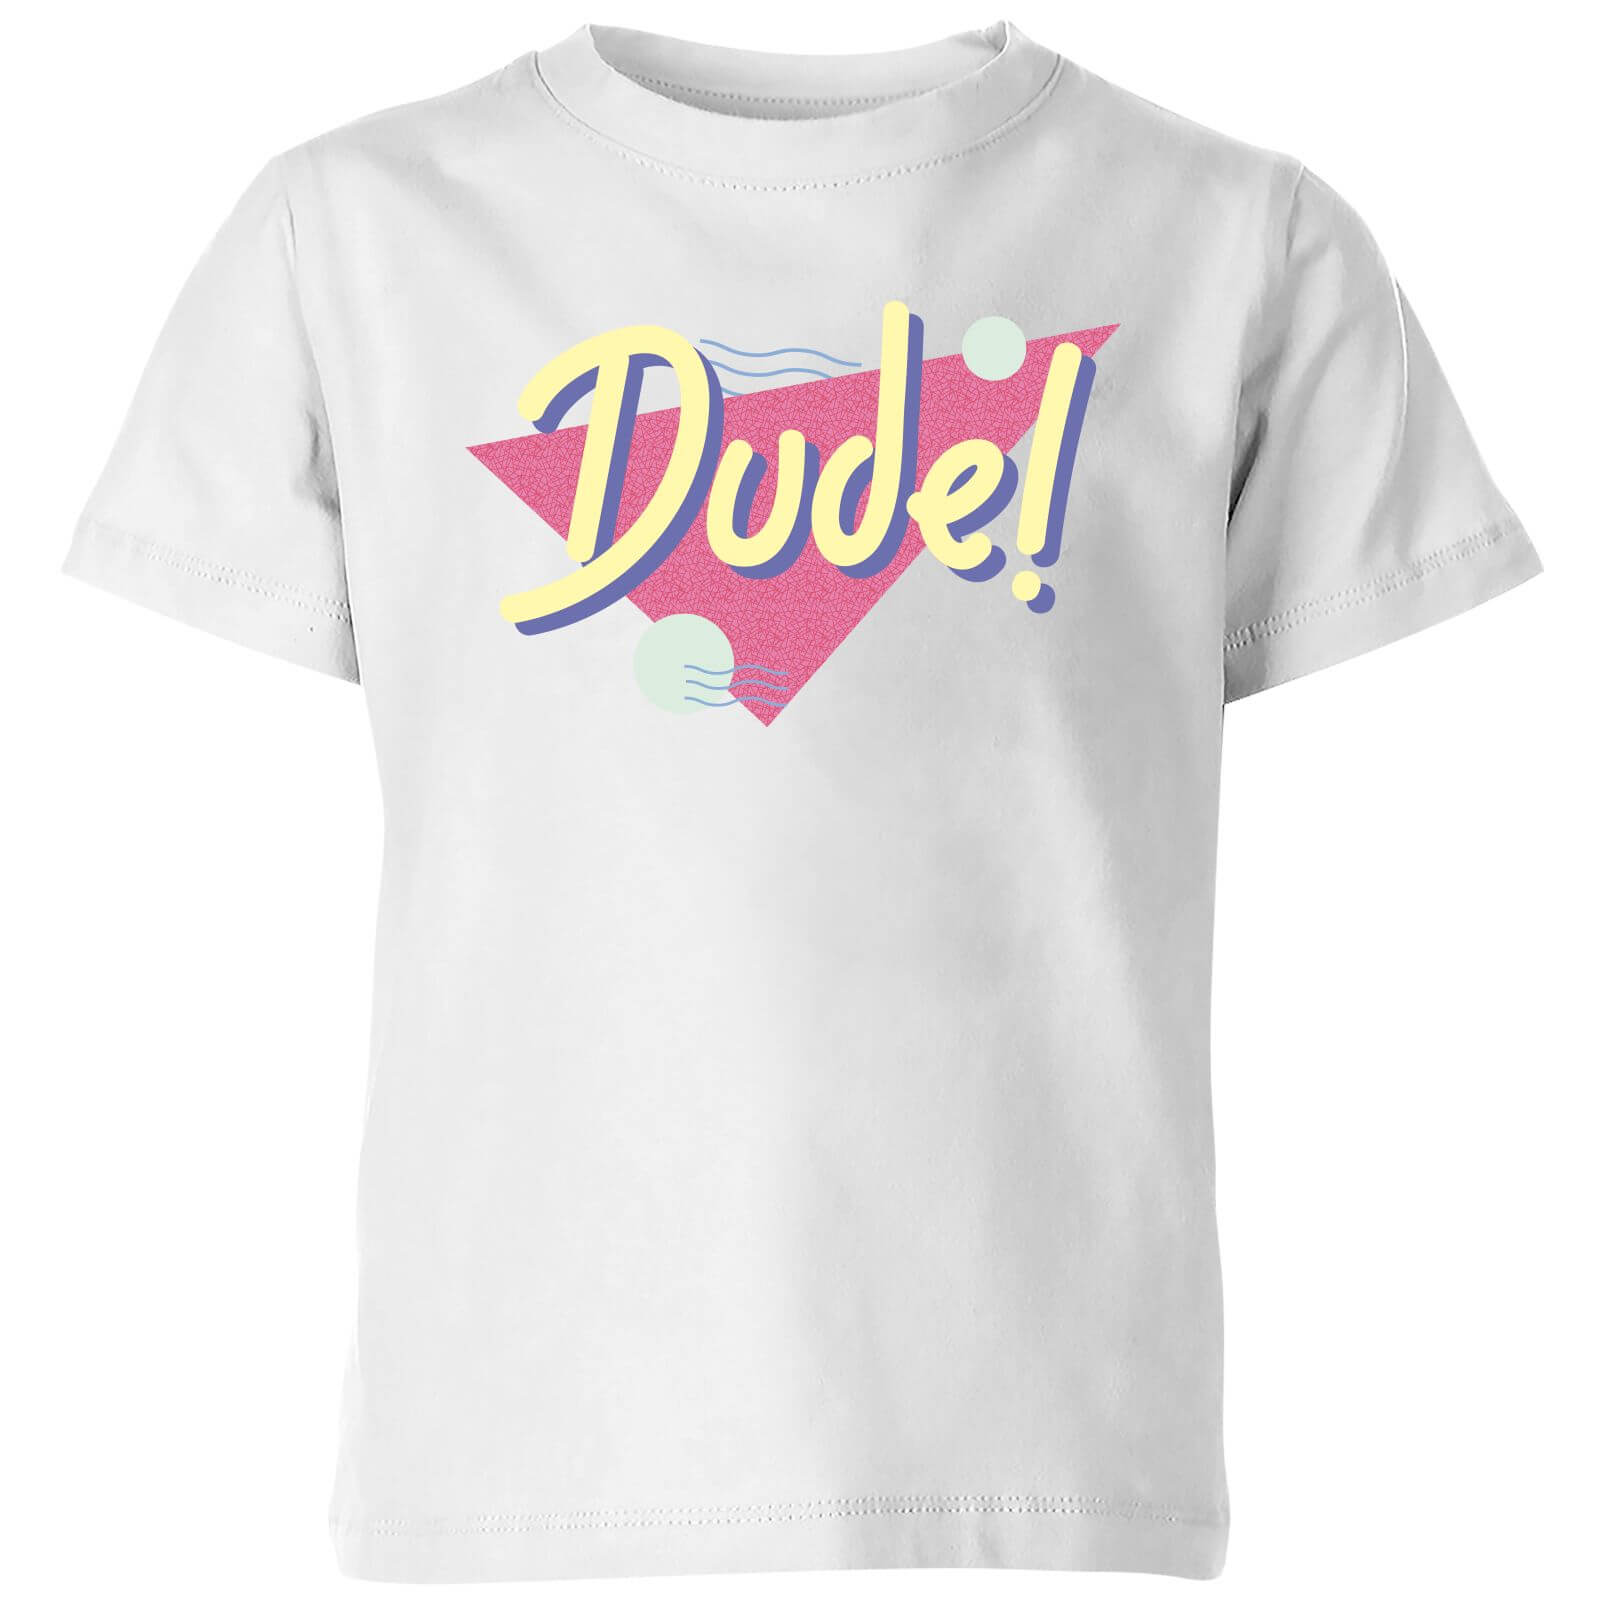 Dude! Kids' T-Shirt - White - 3-4 Years - White